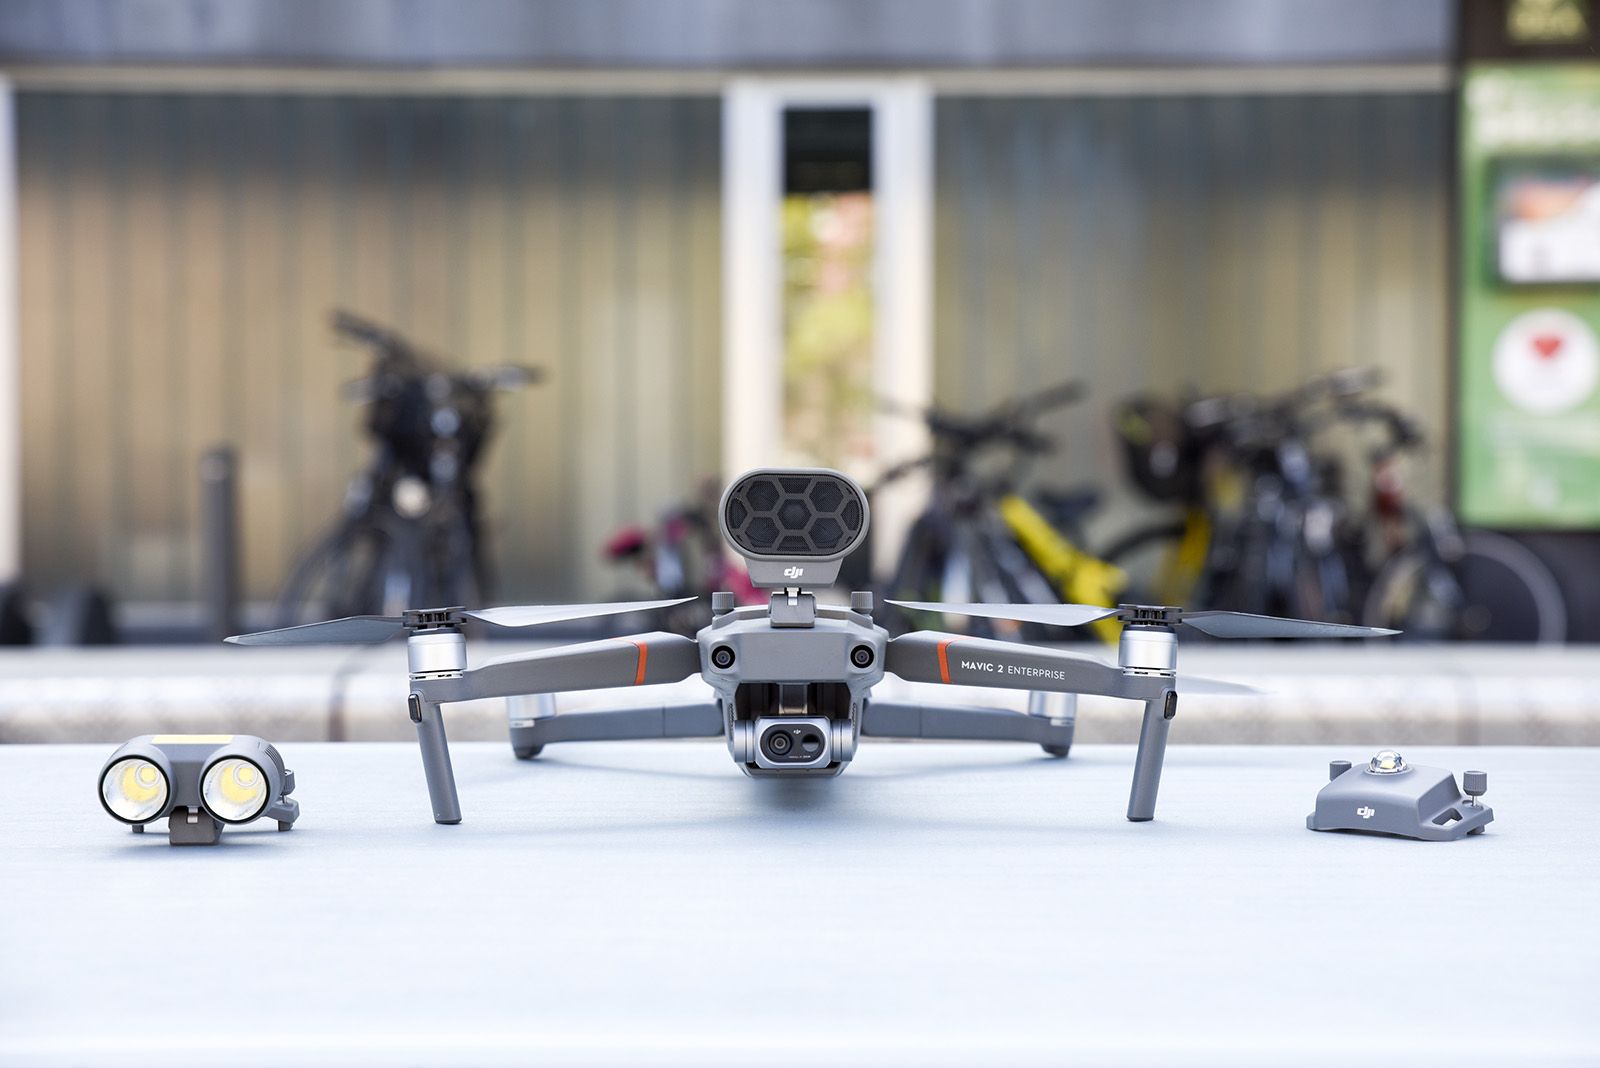 Presentació del dron de confinament a Sant Cugat. Foto: Bernat Millet